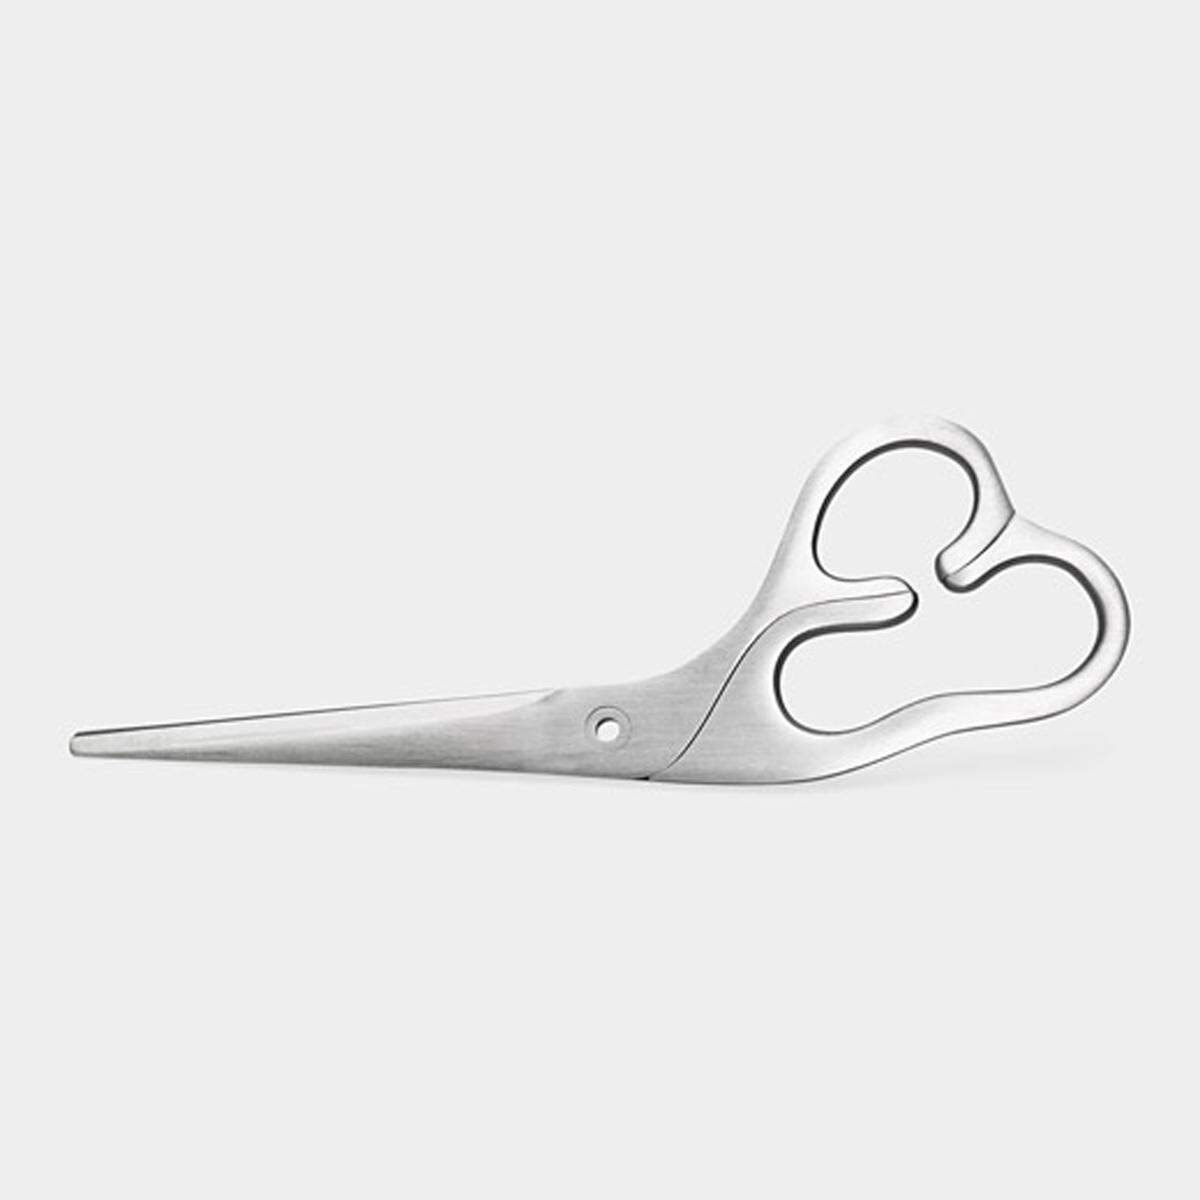 Die von Karim Rashid designte "Sculptural Scissor" ist für Linkshänder geeignet. Erhältlich ist die aus japanischem Stahl gefertigte Schere im MOMA New York.